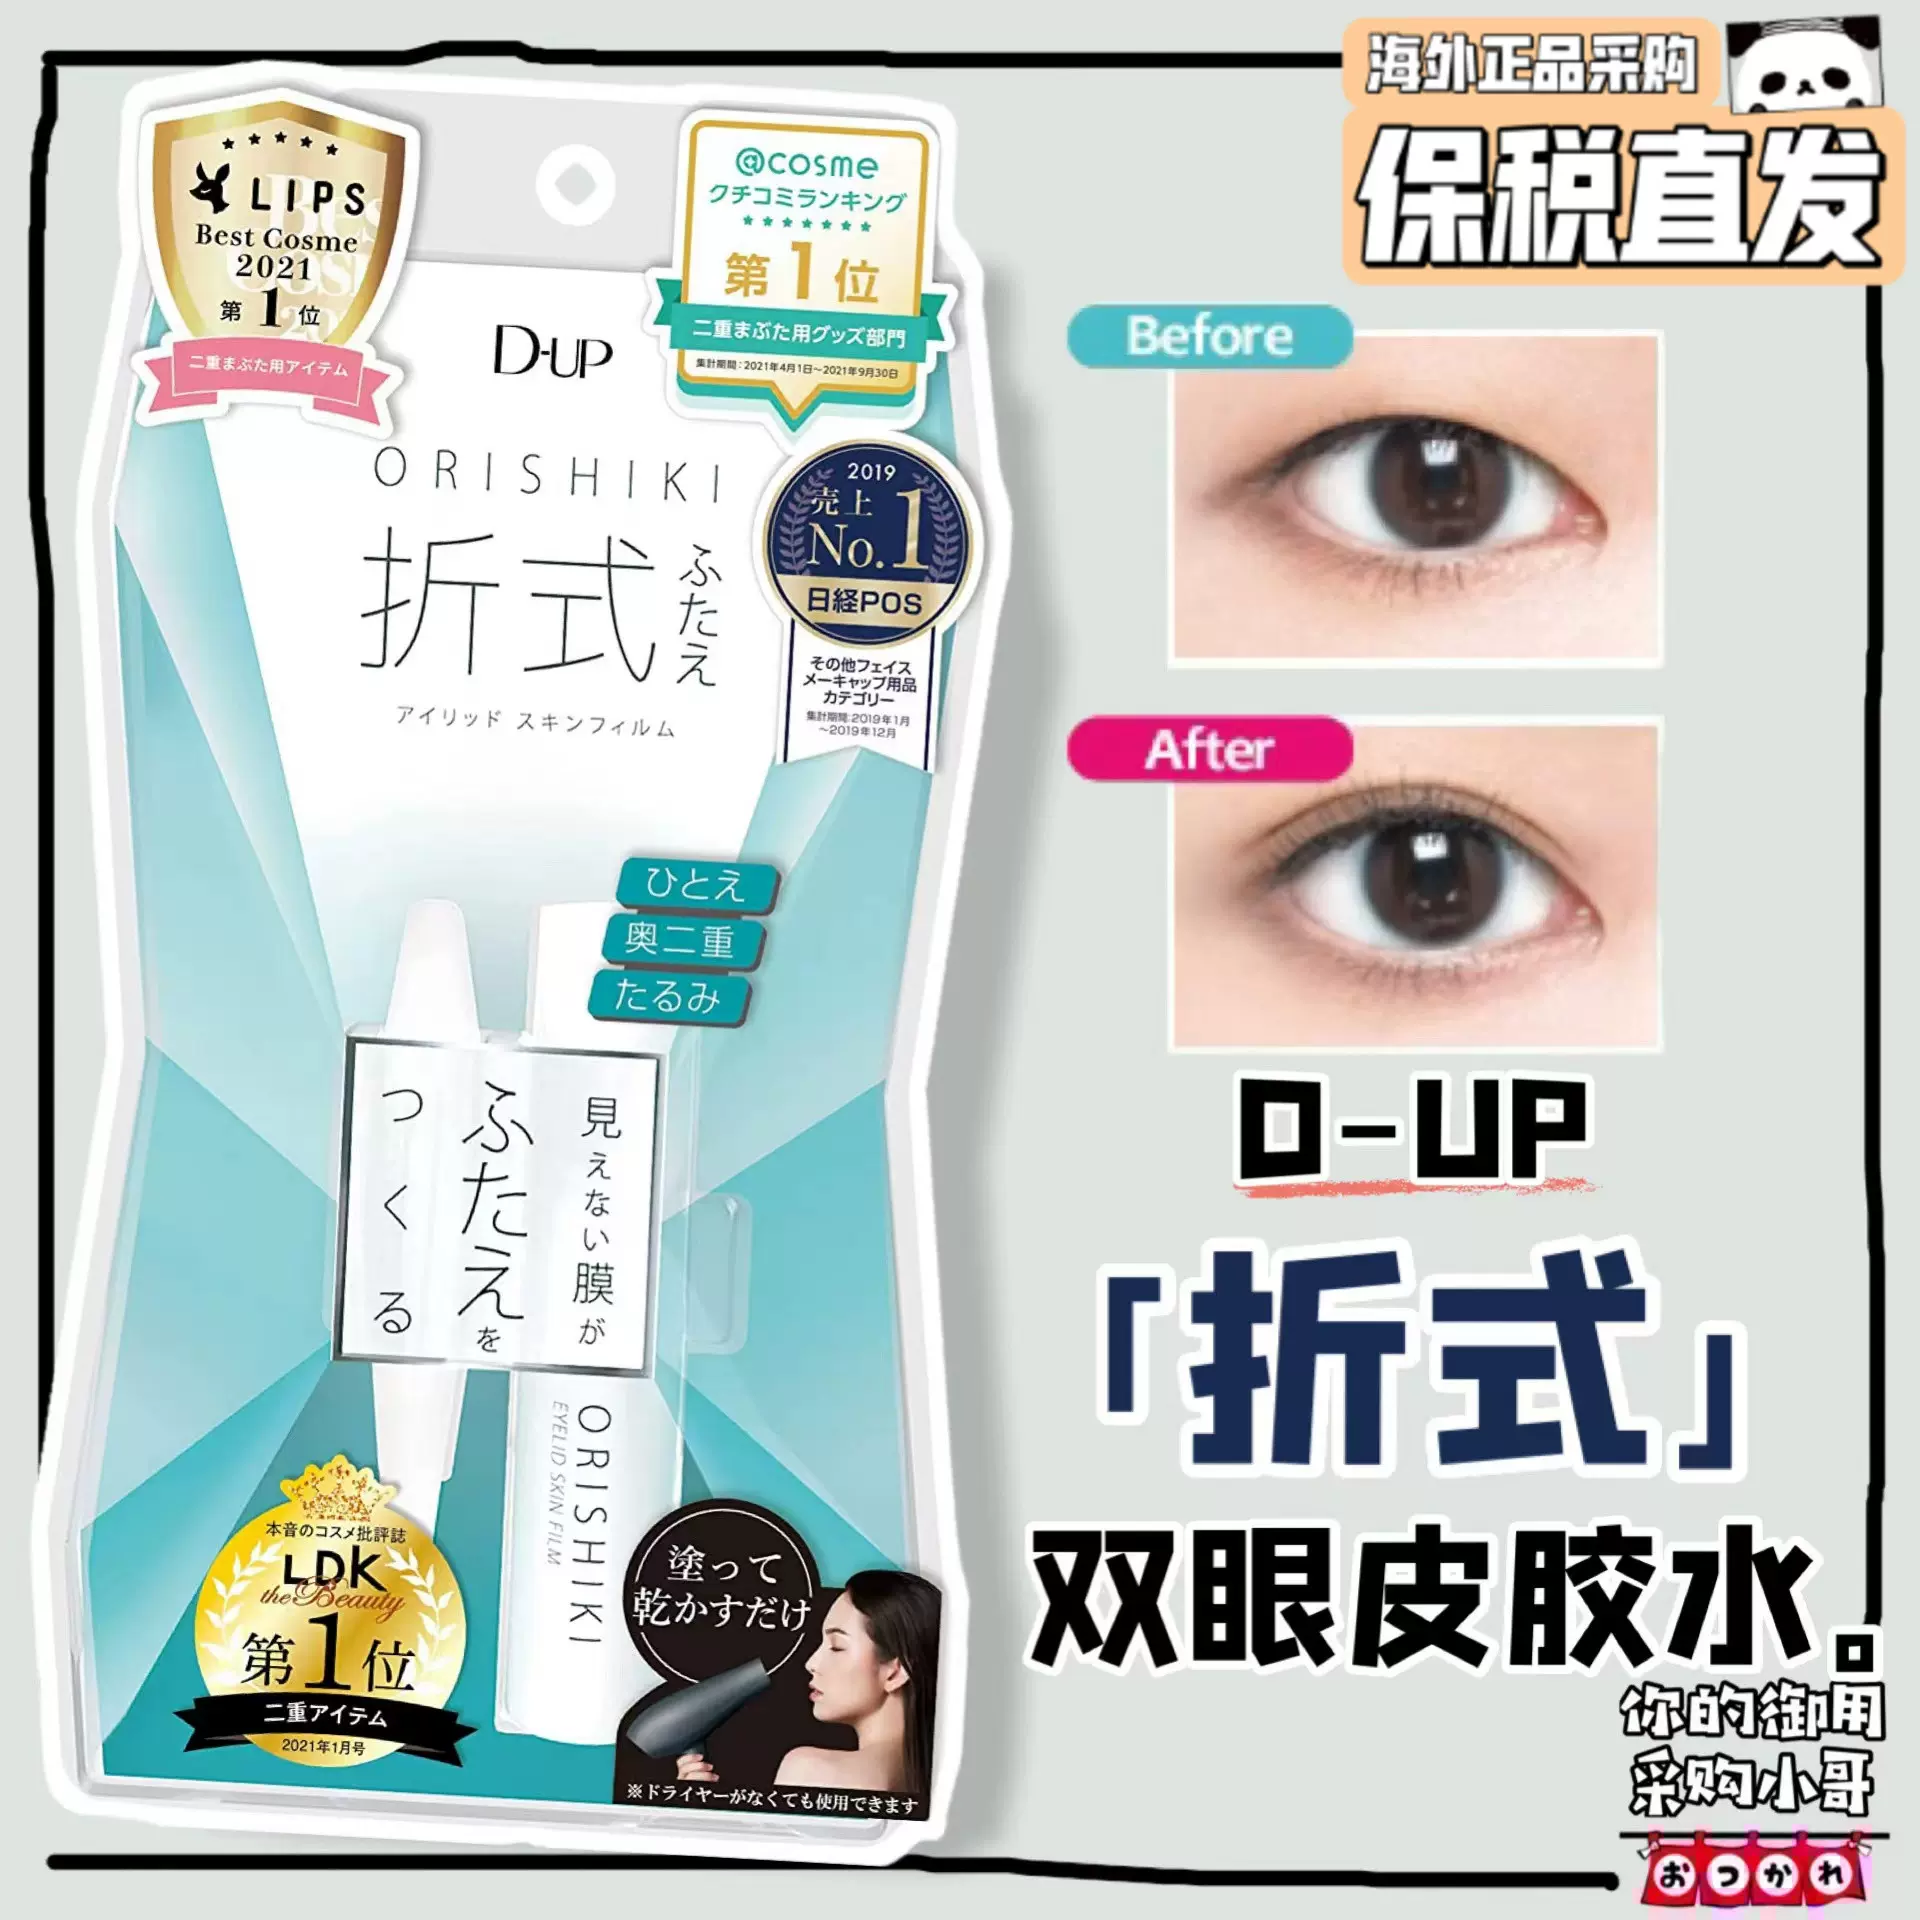 保税现货日本DUP ORISHIKI折式隐形双眼皮胶水4ml无痕自然速干- Taobao